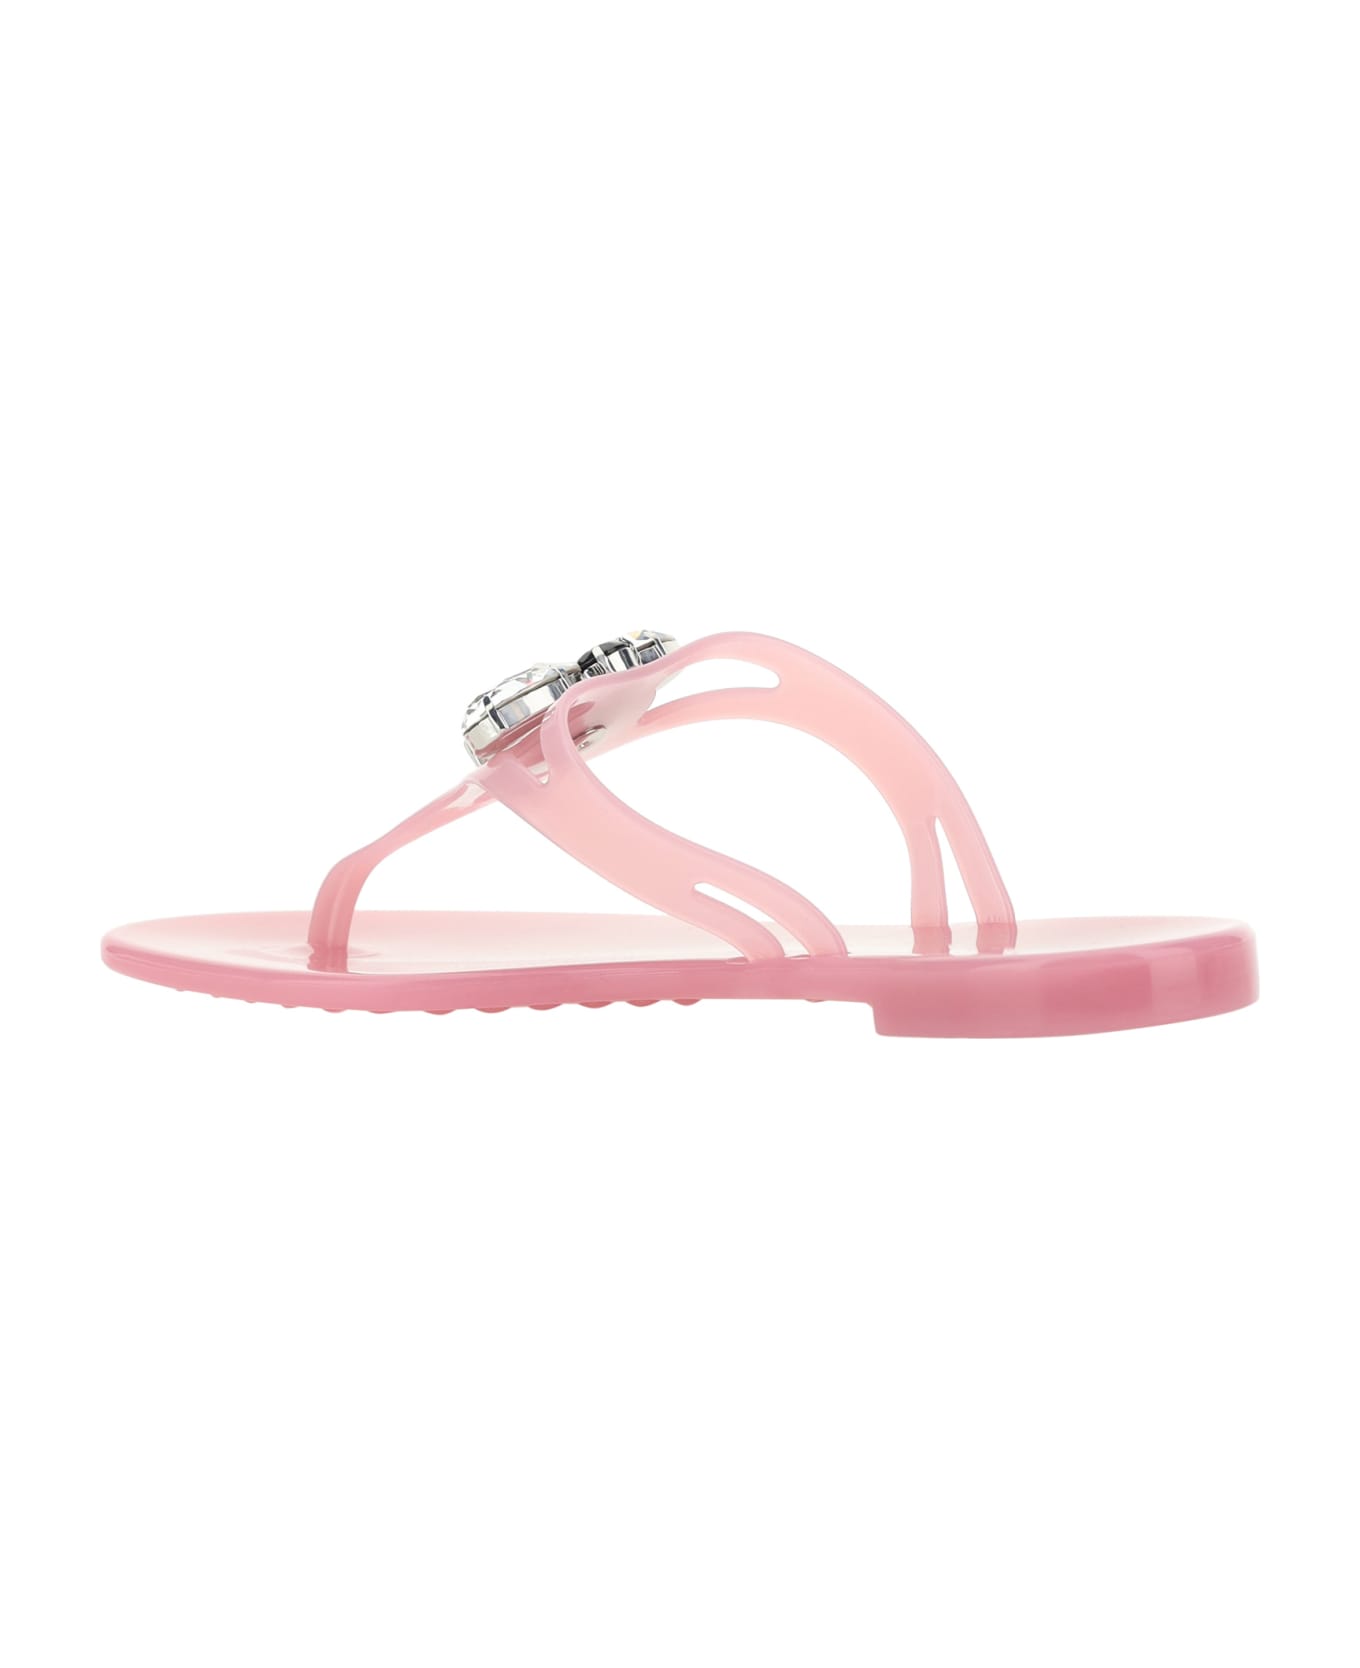 Casadei Queen Bee Beach Sandals - Queen Bee Pink House サンダル